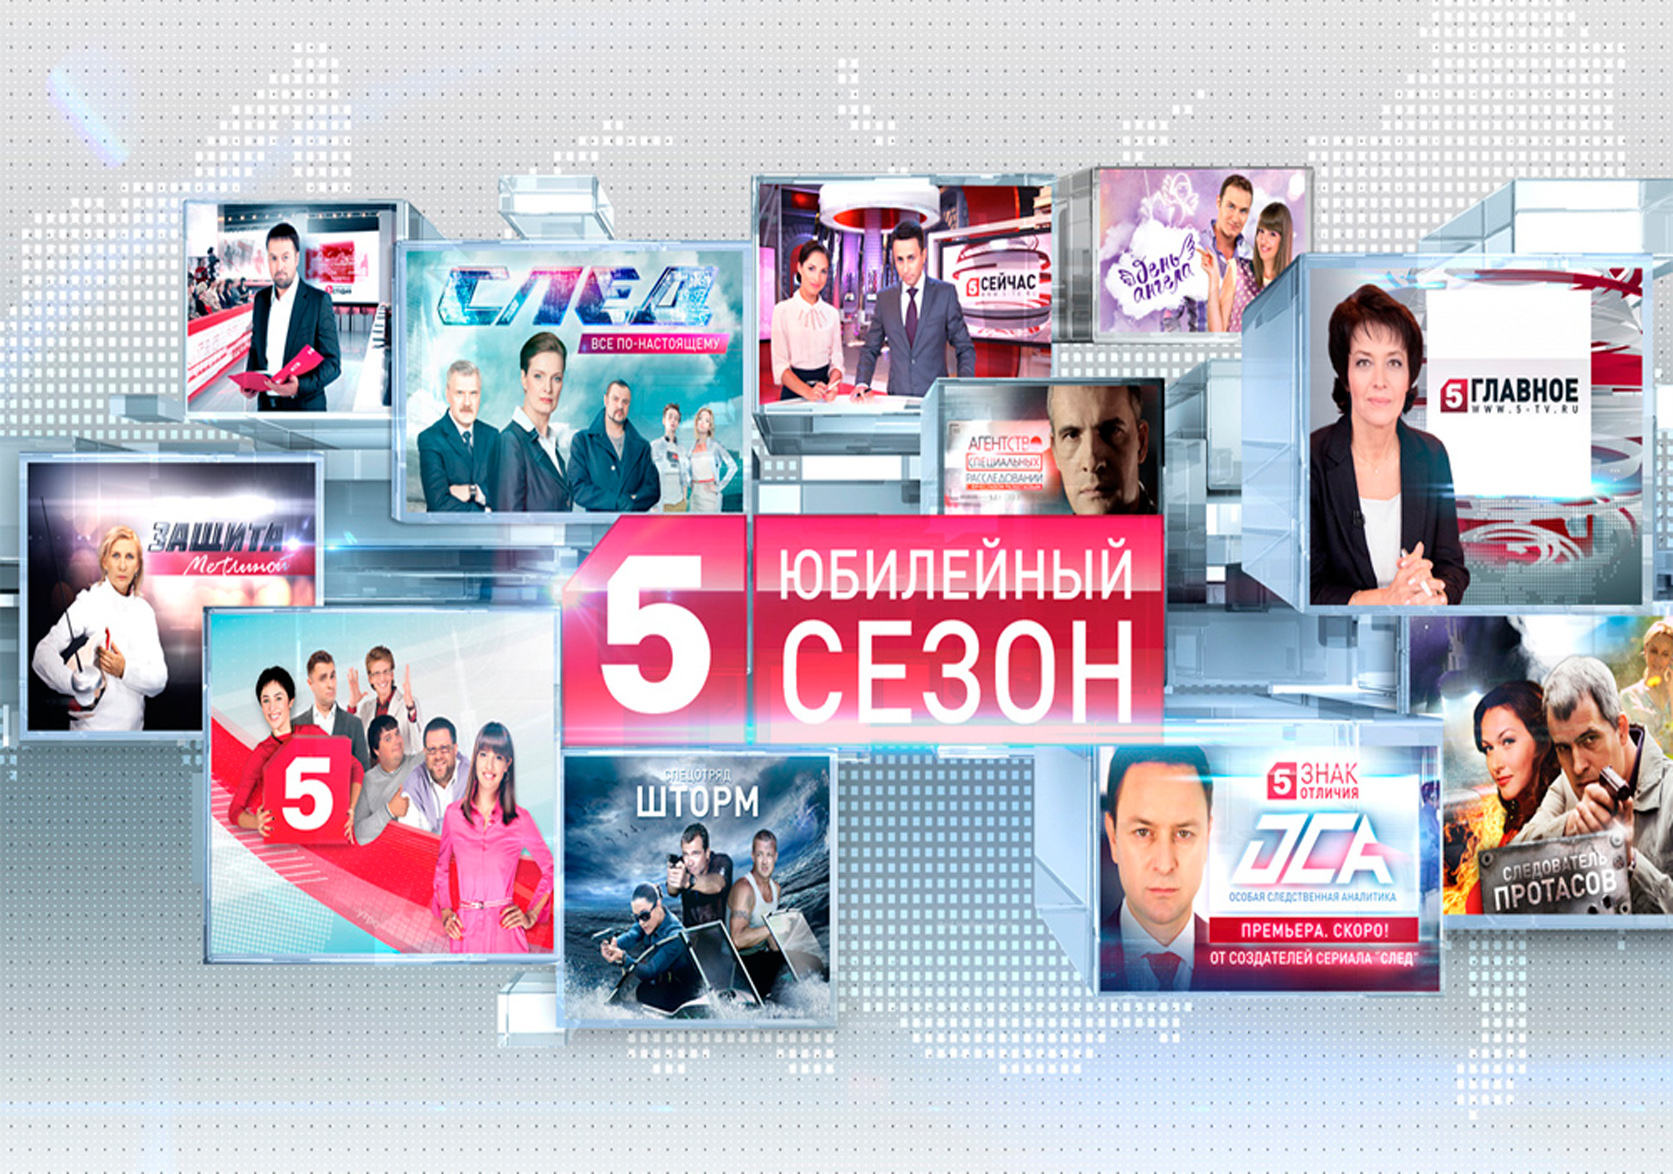 Программа главная новость. 5 Канал. Телеканал пятый канал. Пятый канал программа. Телерадиокомпания Петербург пятый канал.